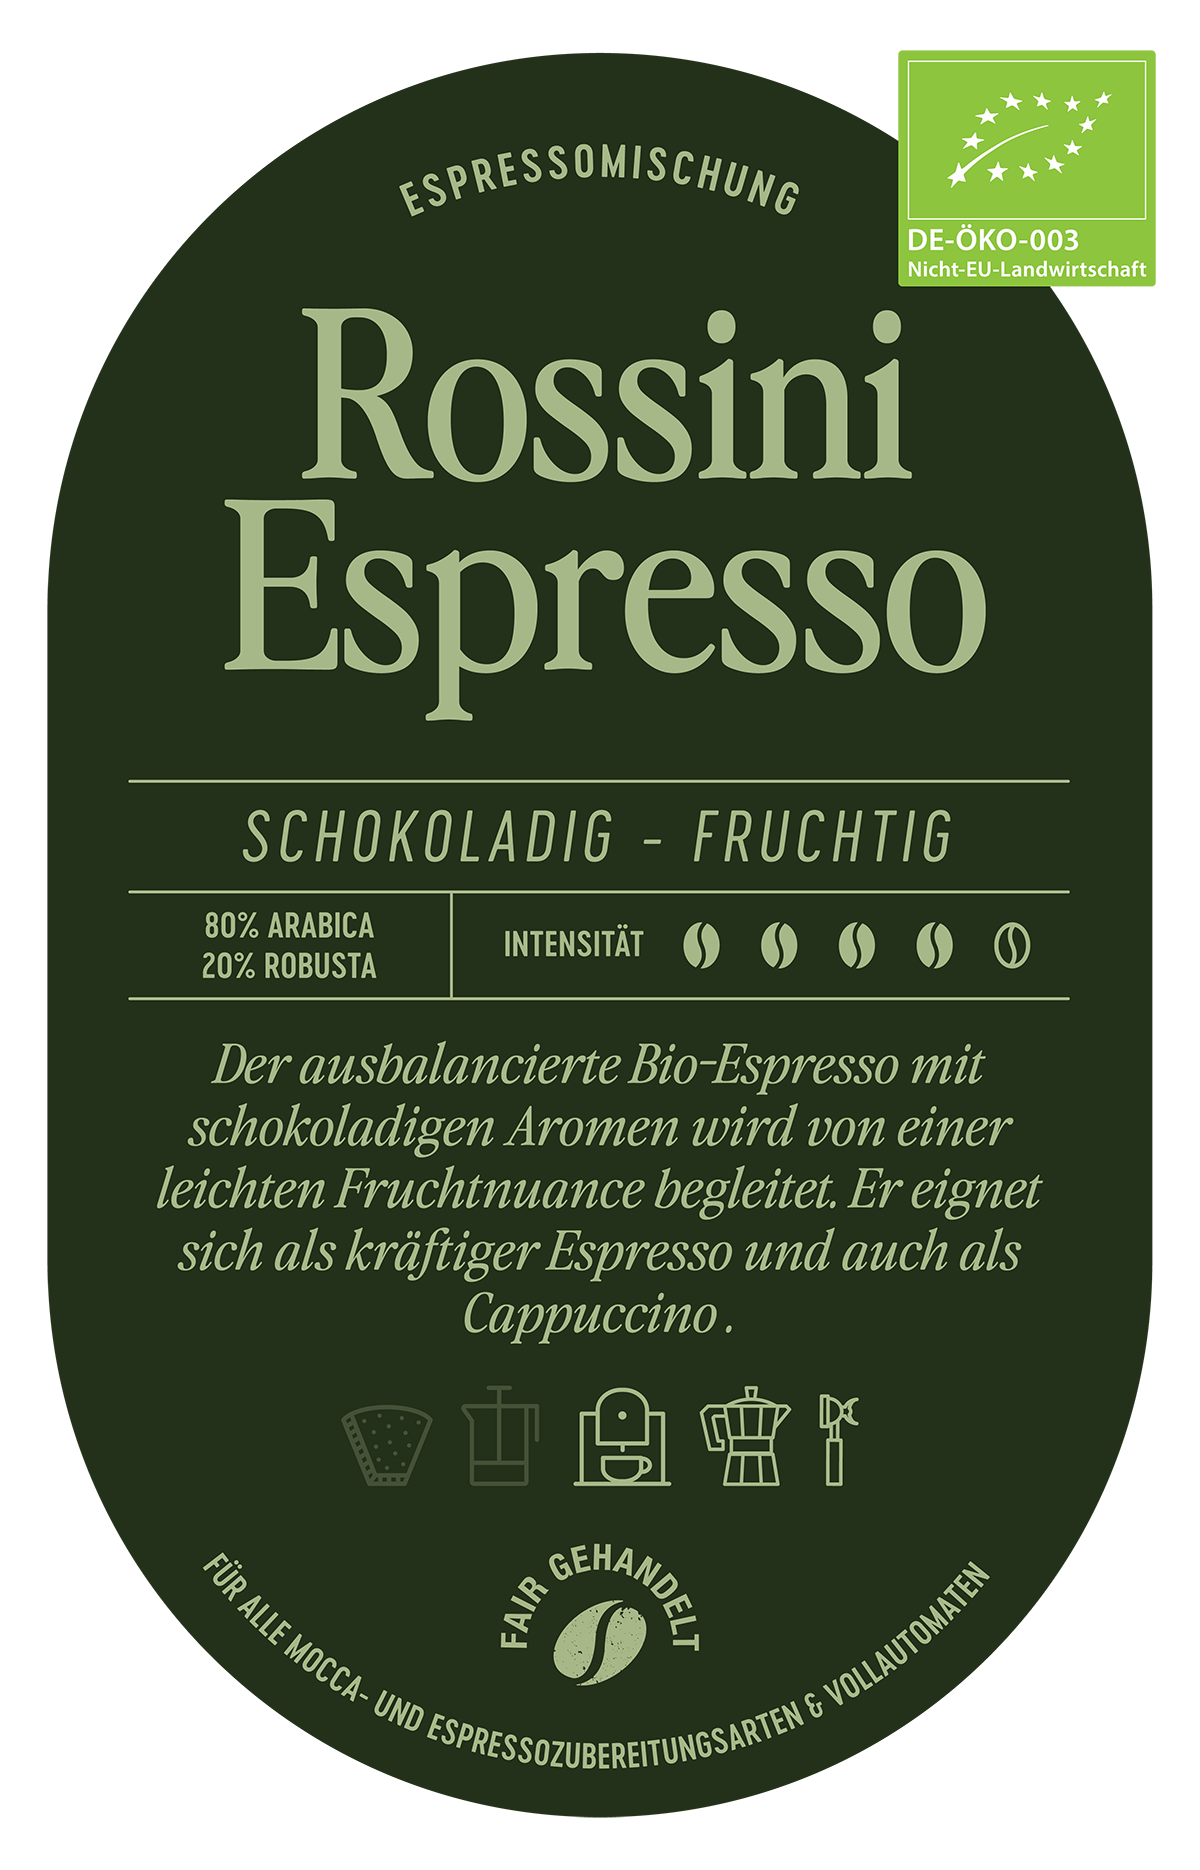 Espresso Rossini